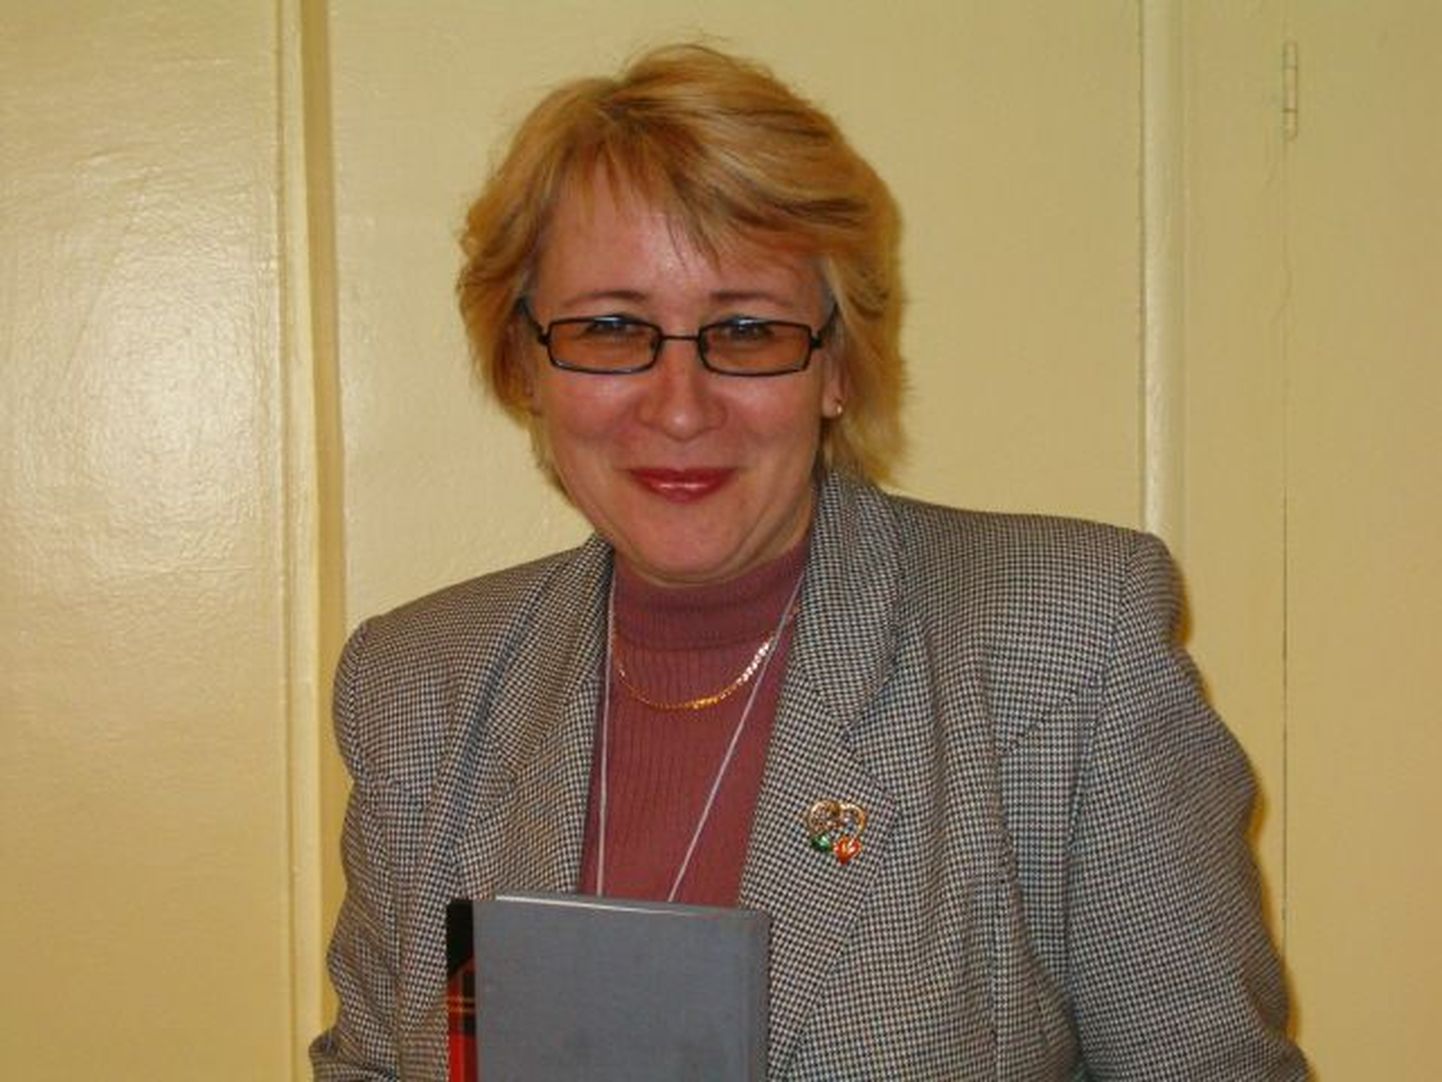 Lääne-Virumaa aasta terviseedendaja tiitliga pärjati esimesena 2012. aastal Olga Boitsovi.